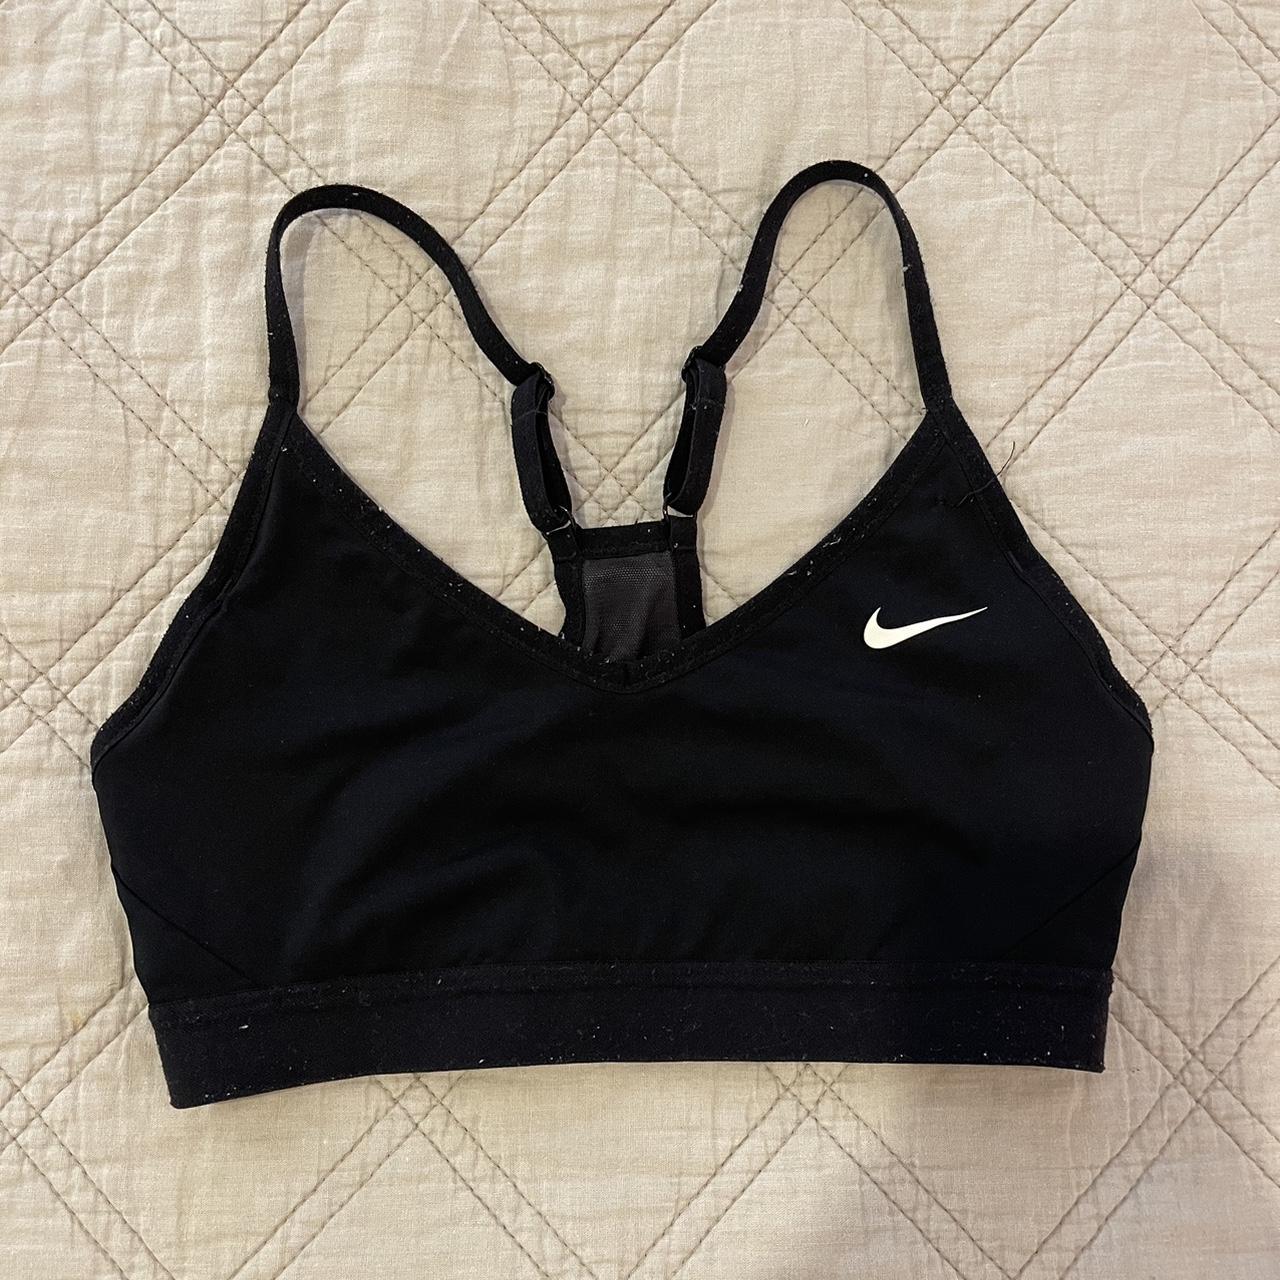 Black Nike Pro sports bra. Quality dri-fit material! - Depop